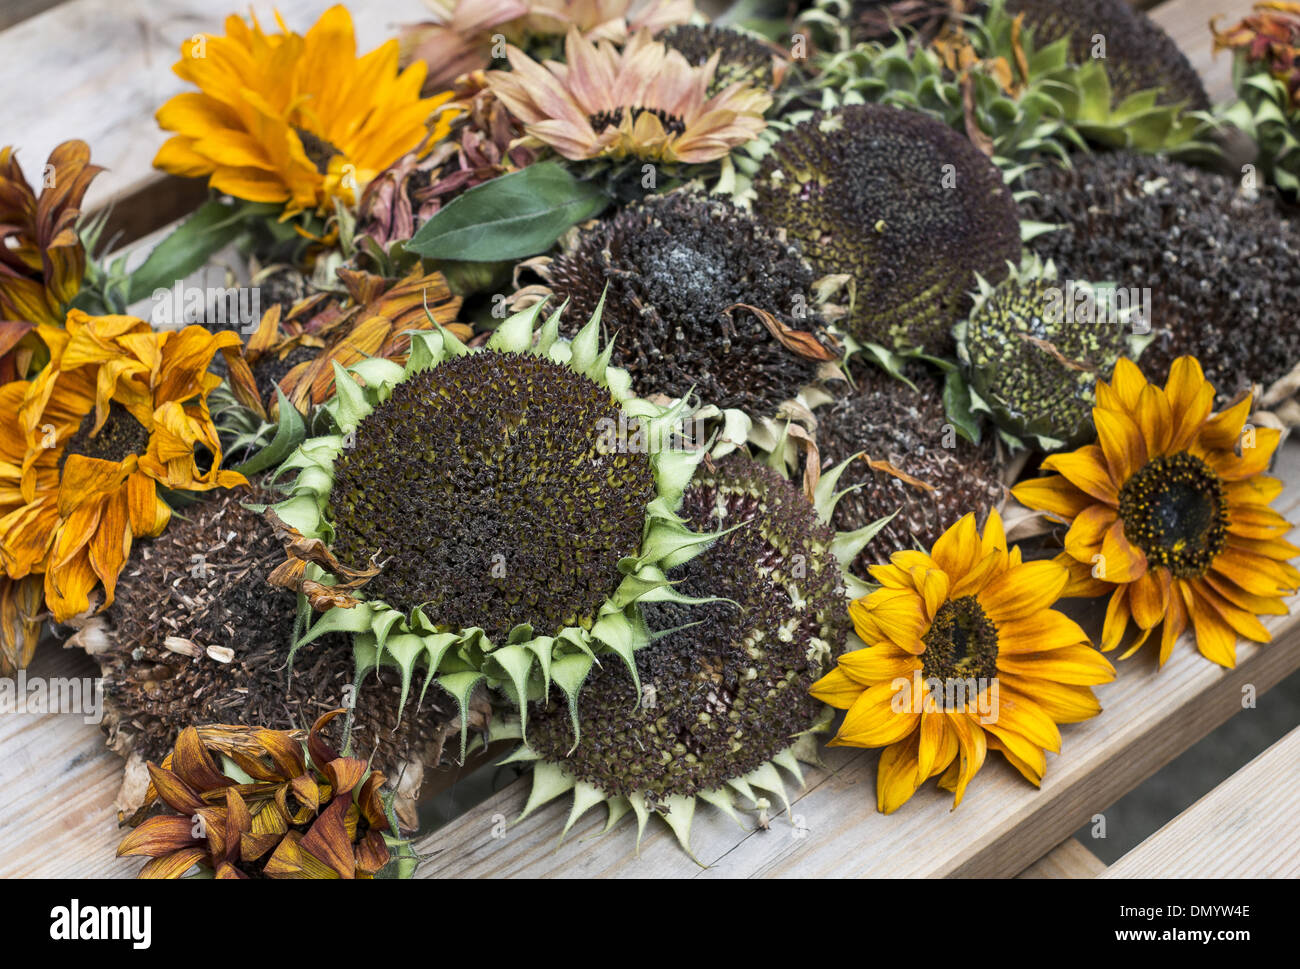 Eine Vielzahl von geernteten Sonnenblumenköpfe Austrocknen auf hölzernen Gartentisch bereit für Johannisbeermarmelade Stockfoto